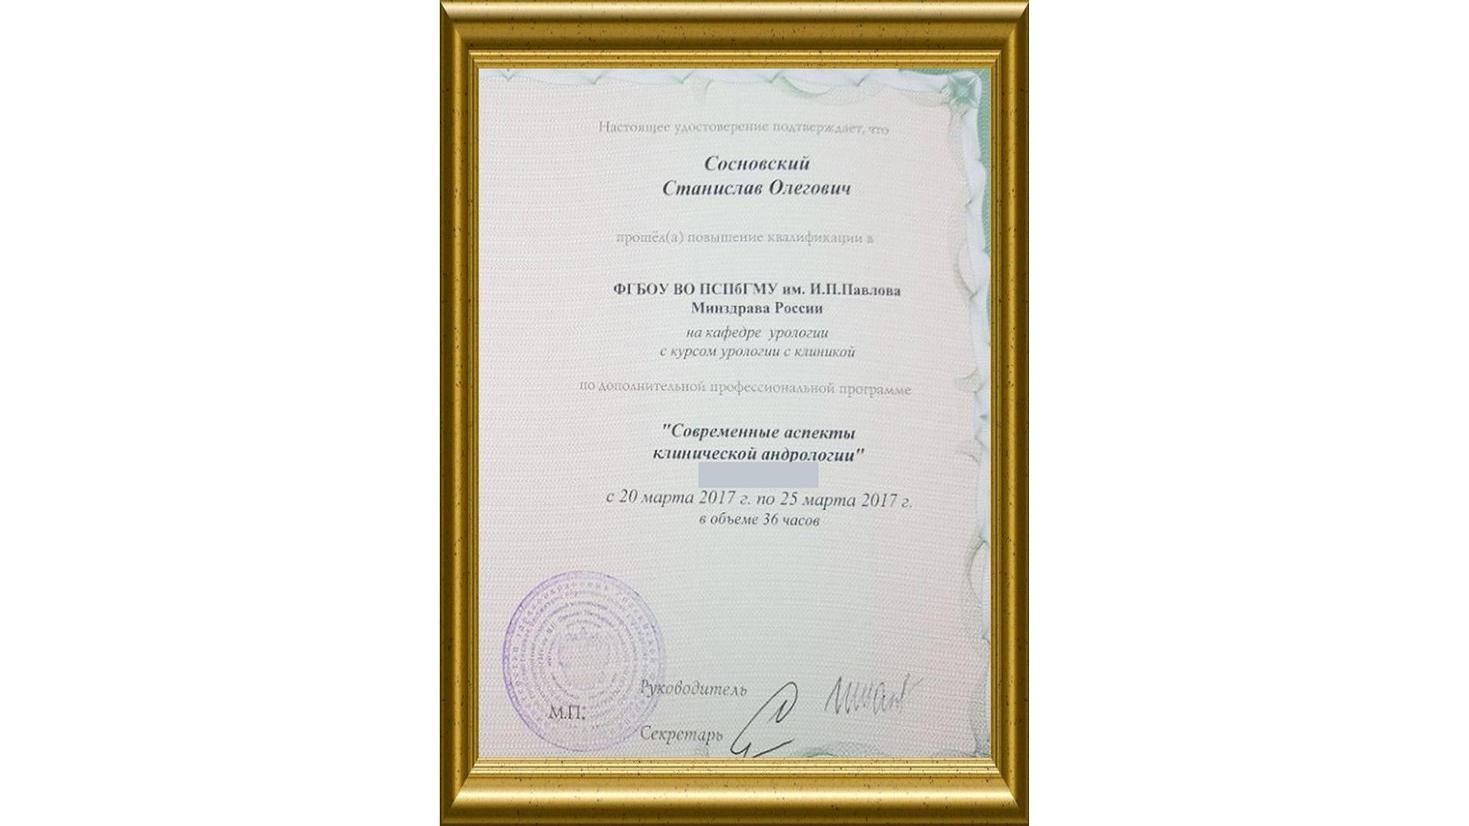 Сертификат андролога